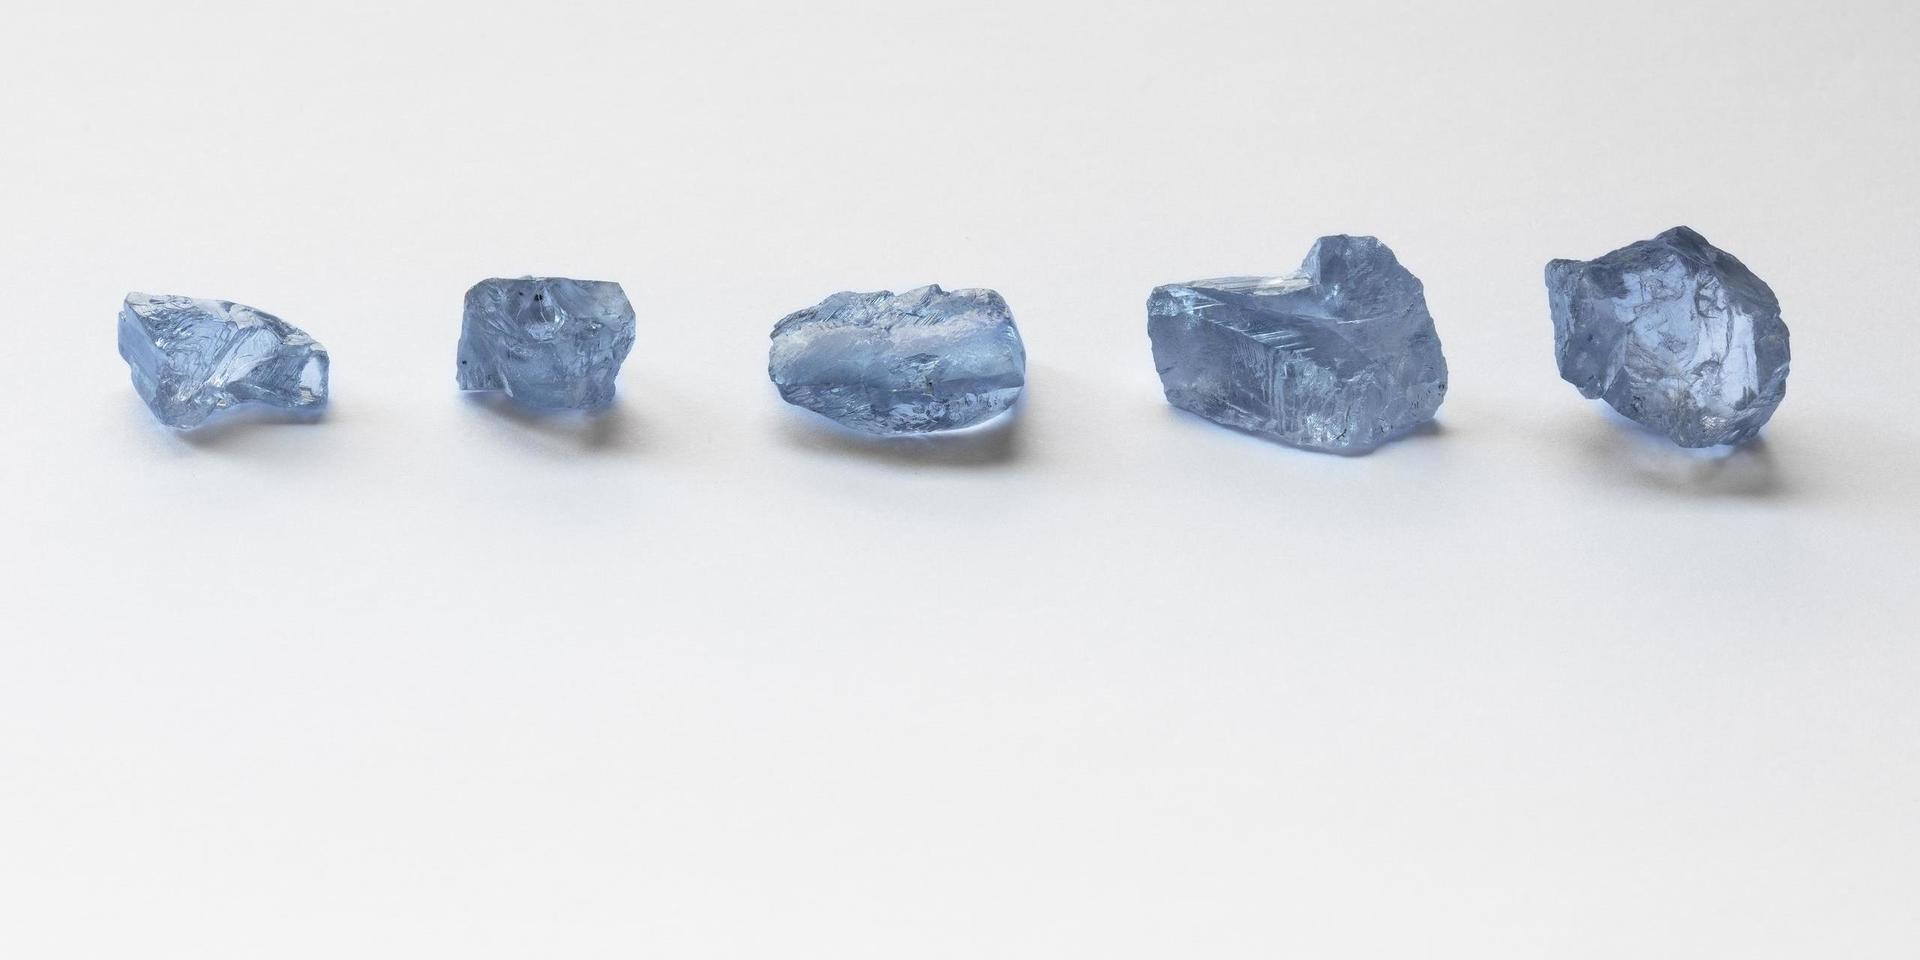 De fem blå diamanterna påträffades i Cullinangruvan öster om sydafrikanska Pretoria.